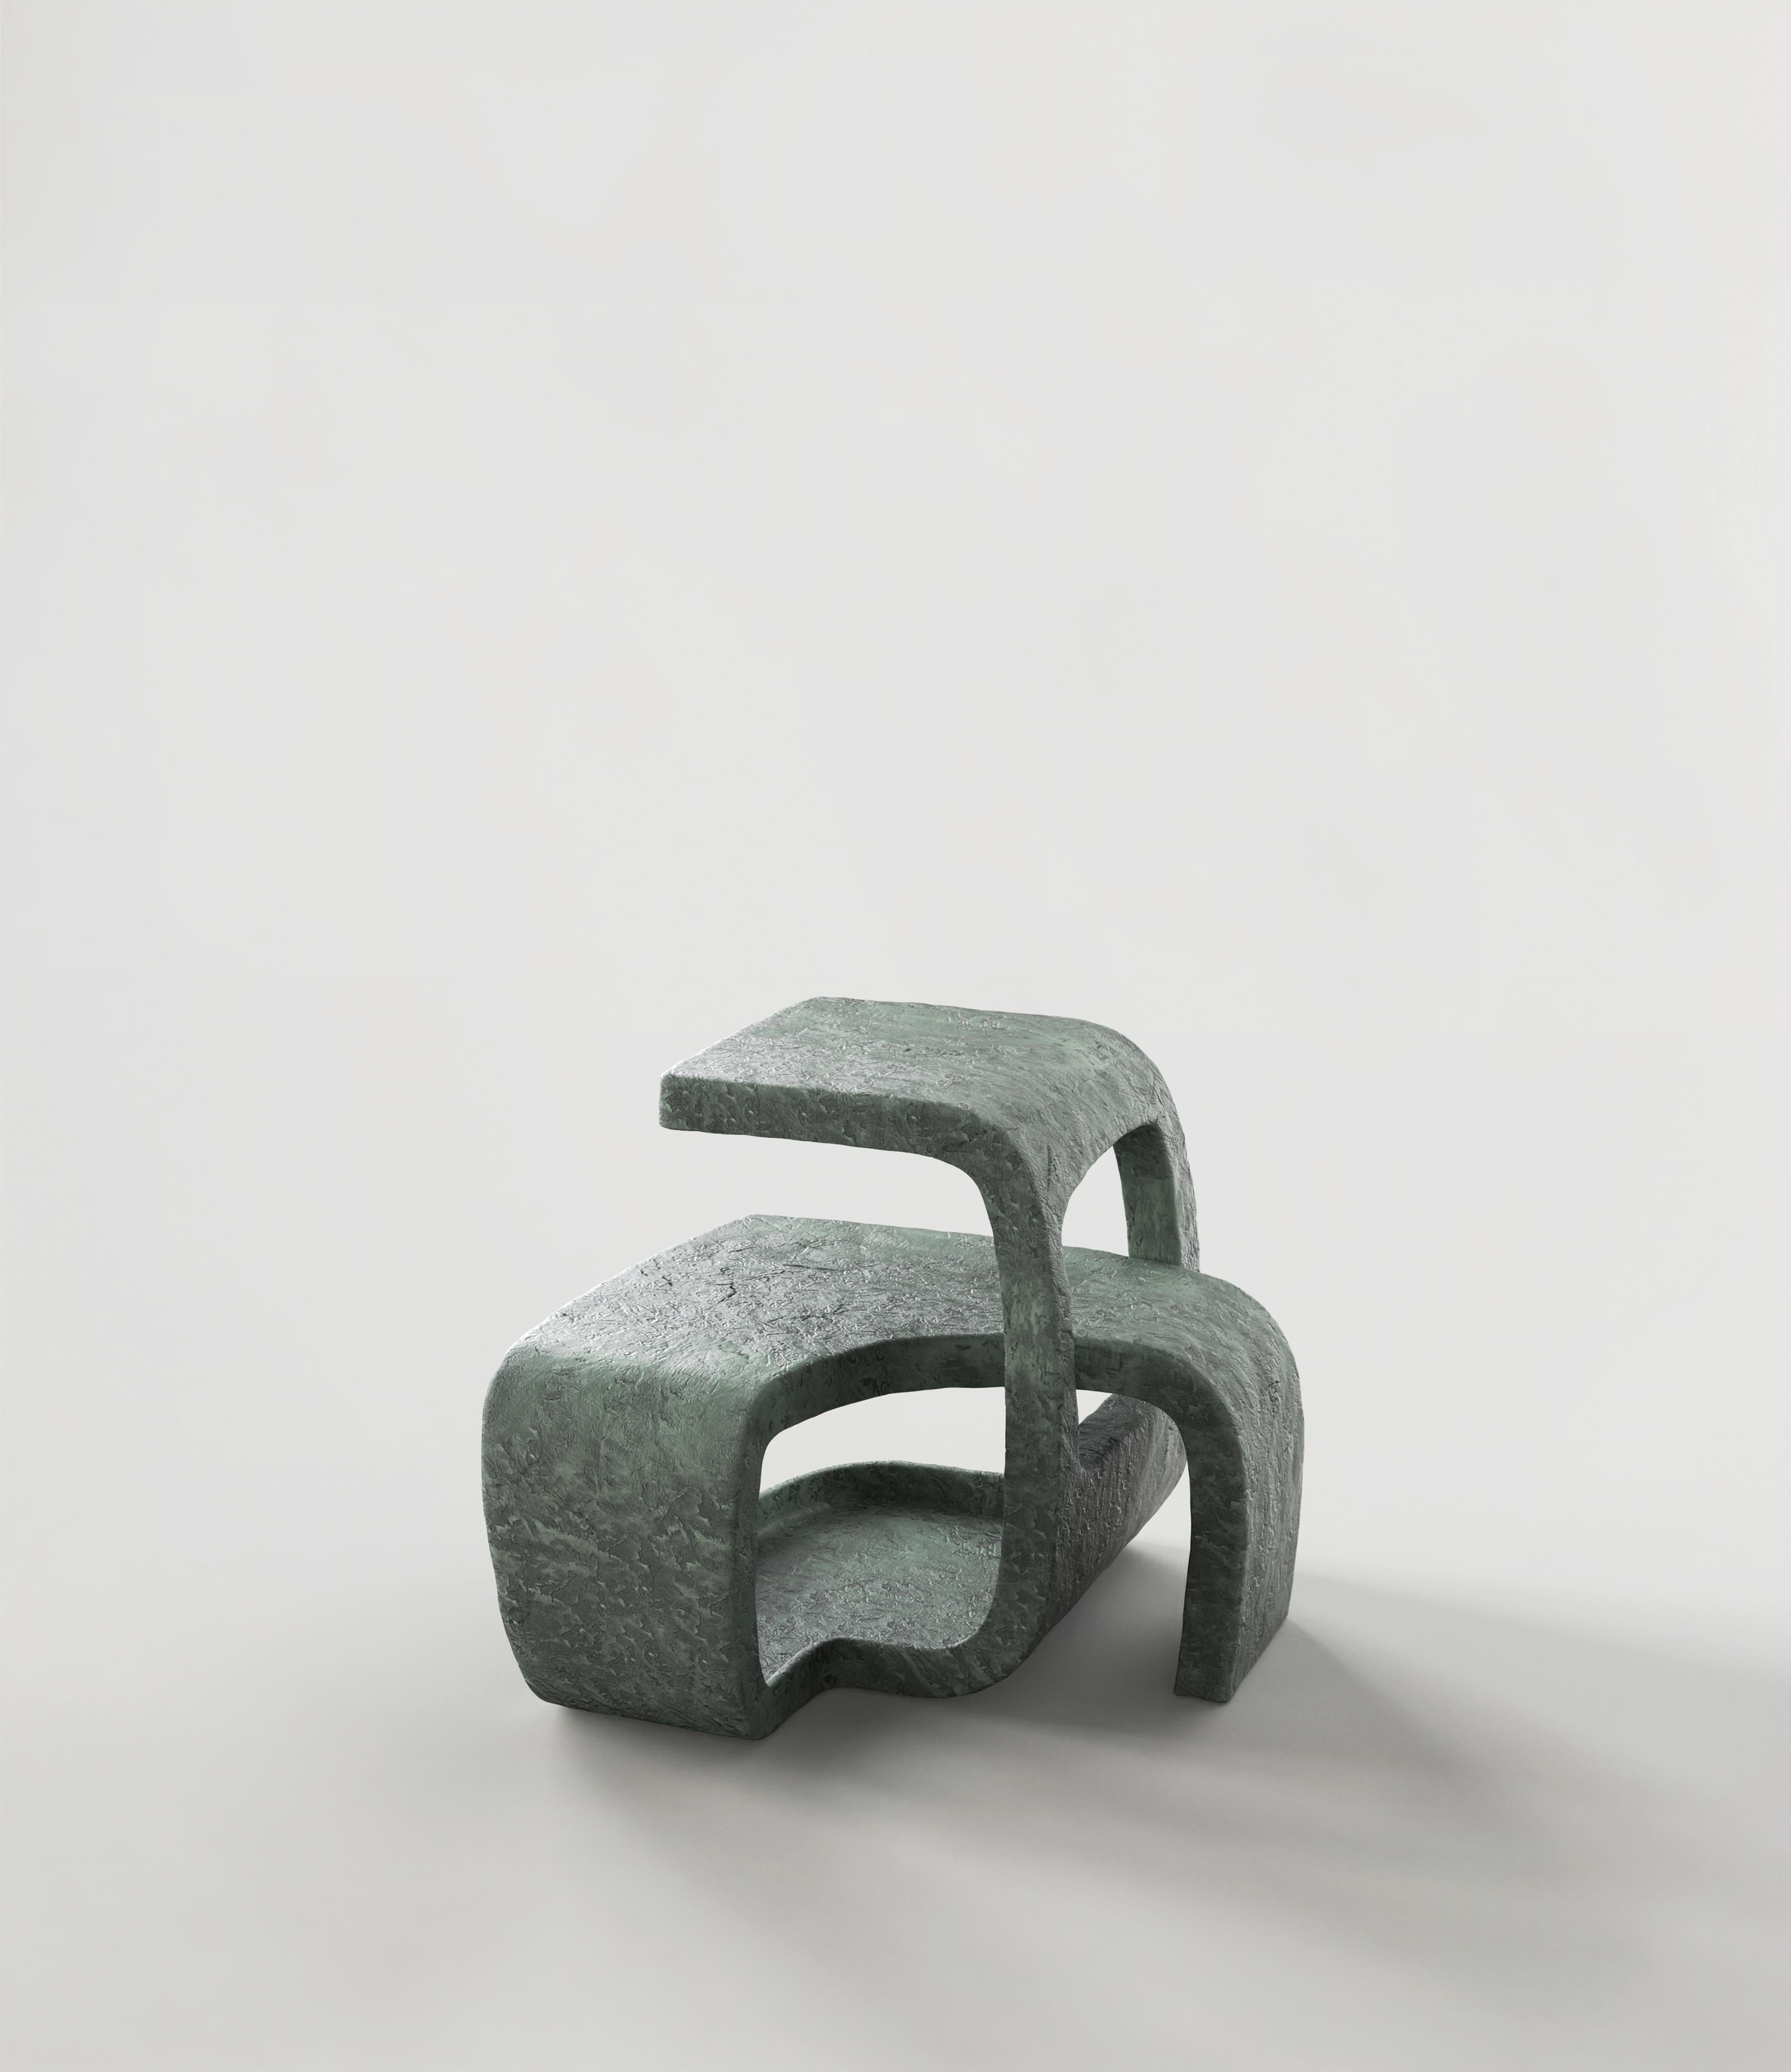 Cast Contemporary Limited Edition Bronze Table, Vertigo V1 by Simone Fanciullacci For Sale